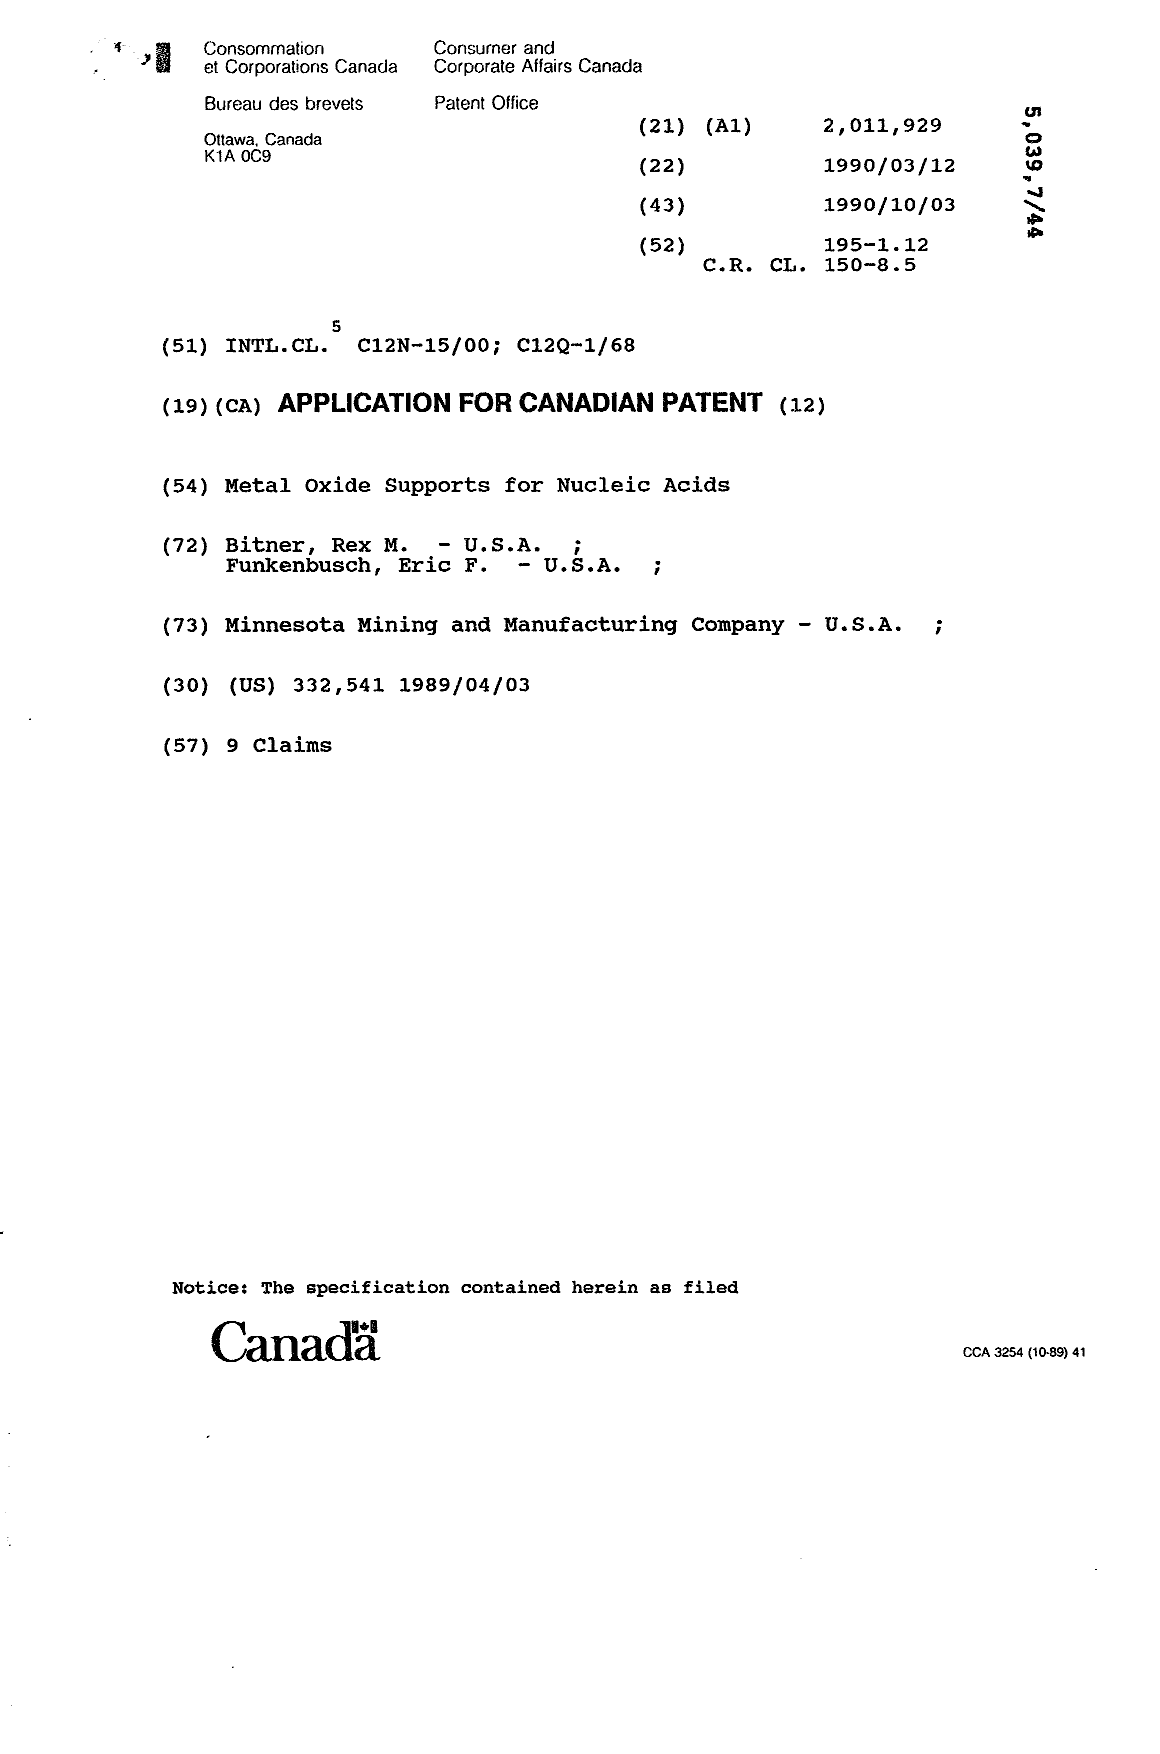 Document de brevet canadien 2011929. Page couverture 19901003. Image 1 de 1